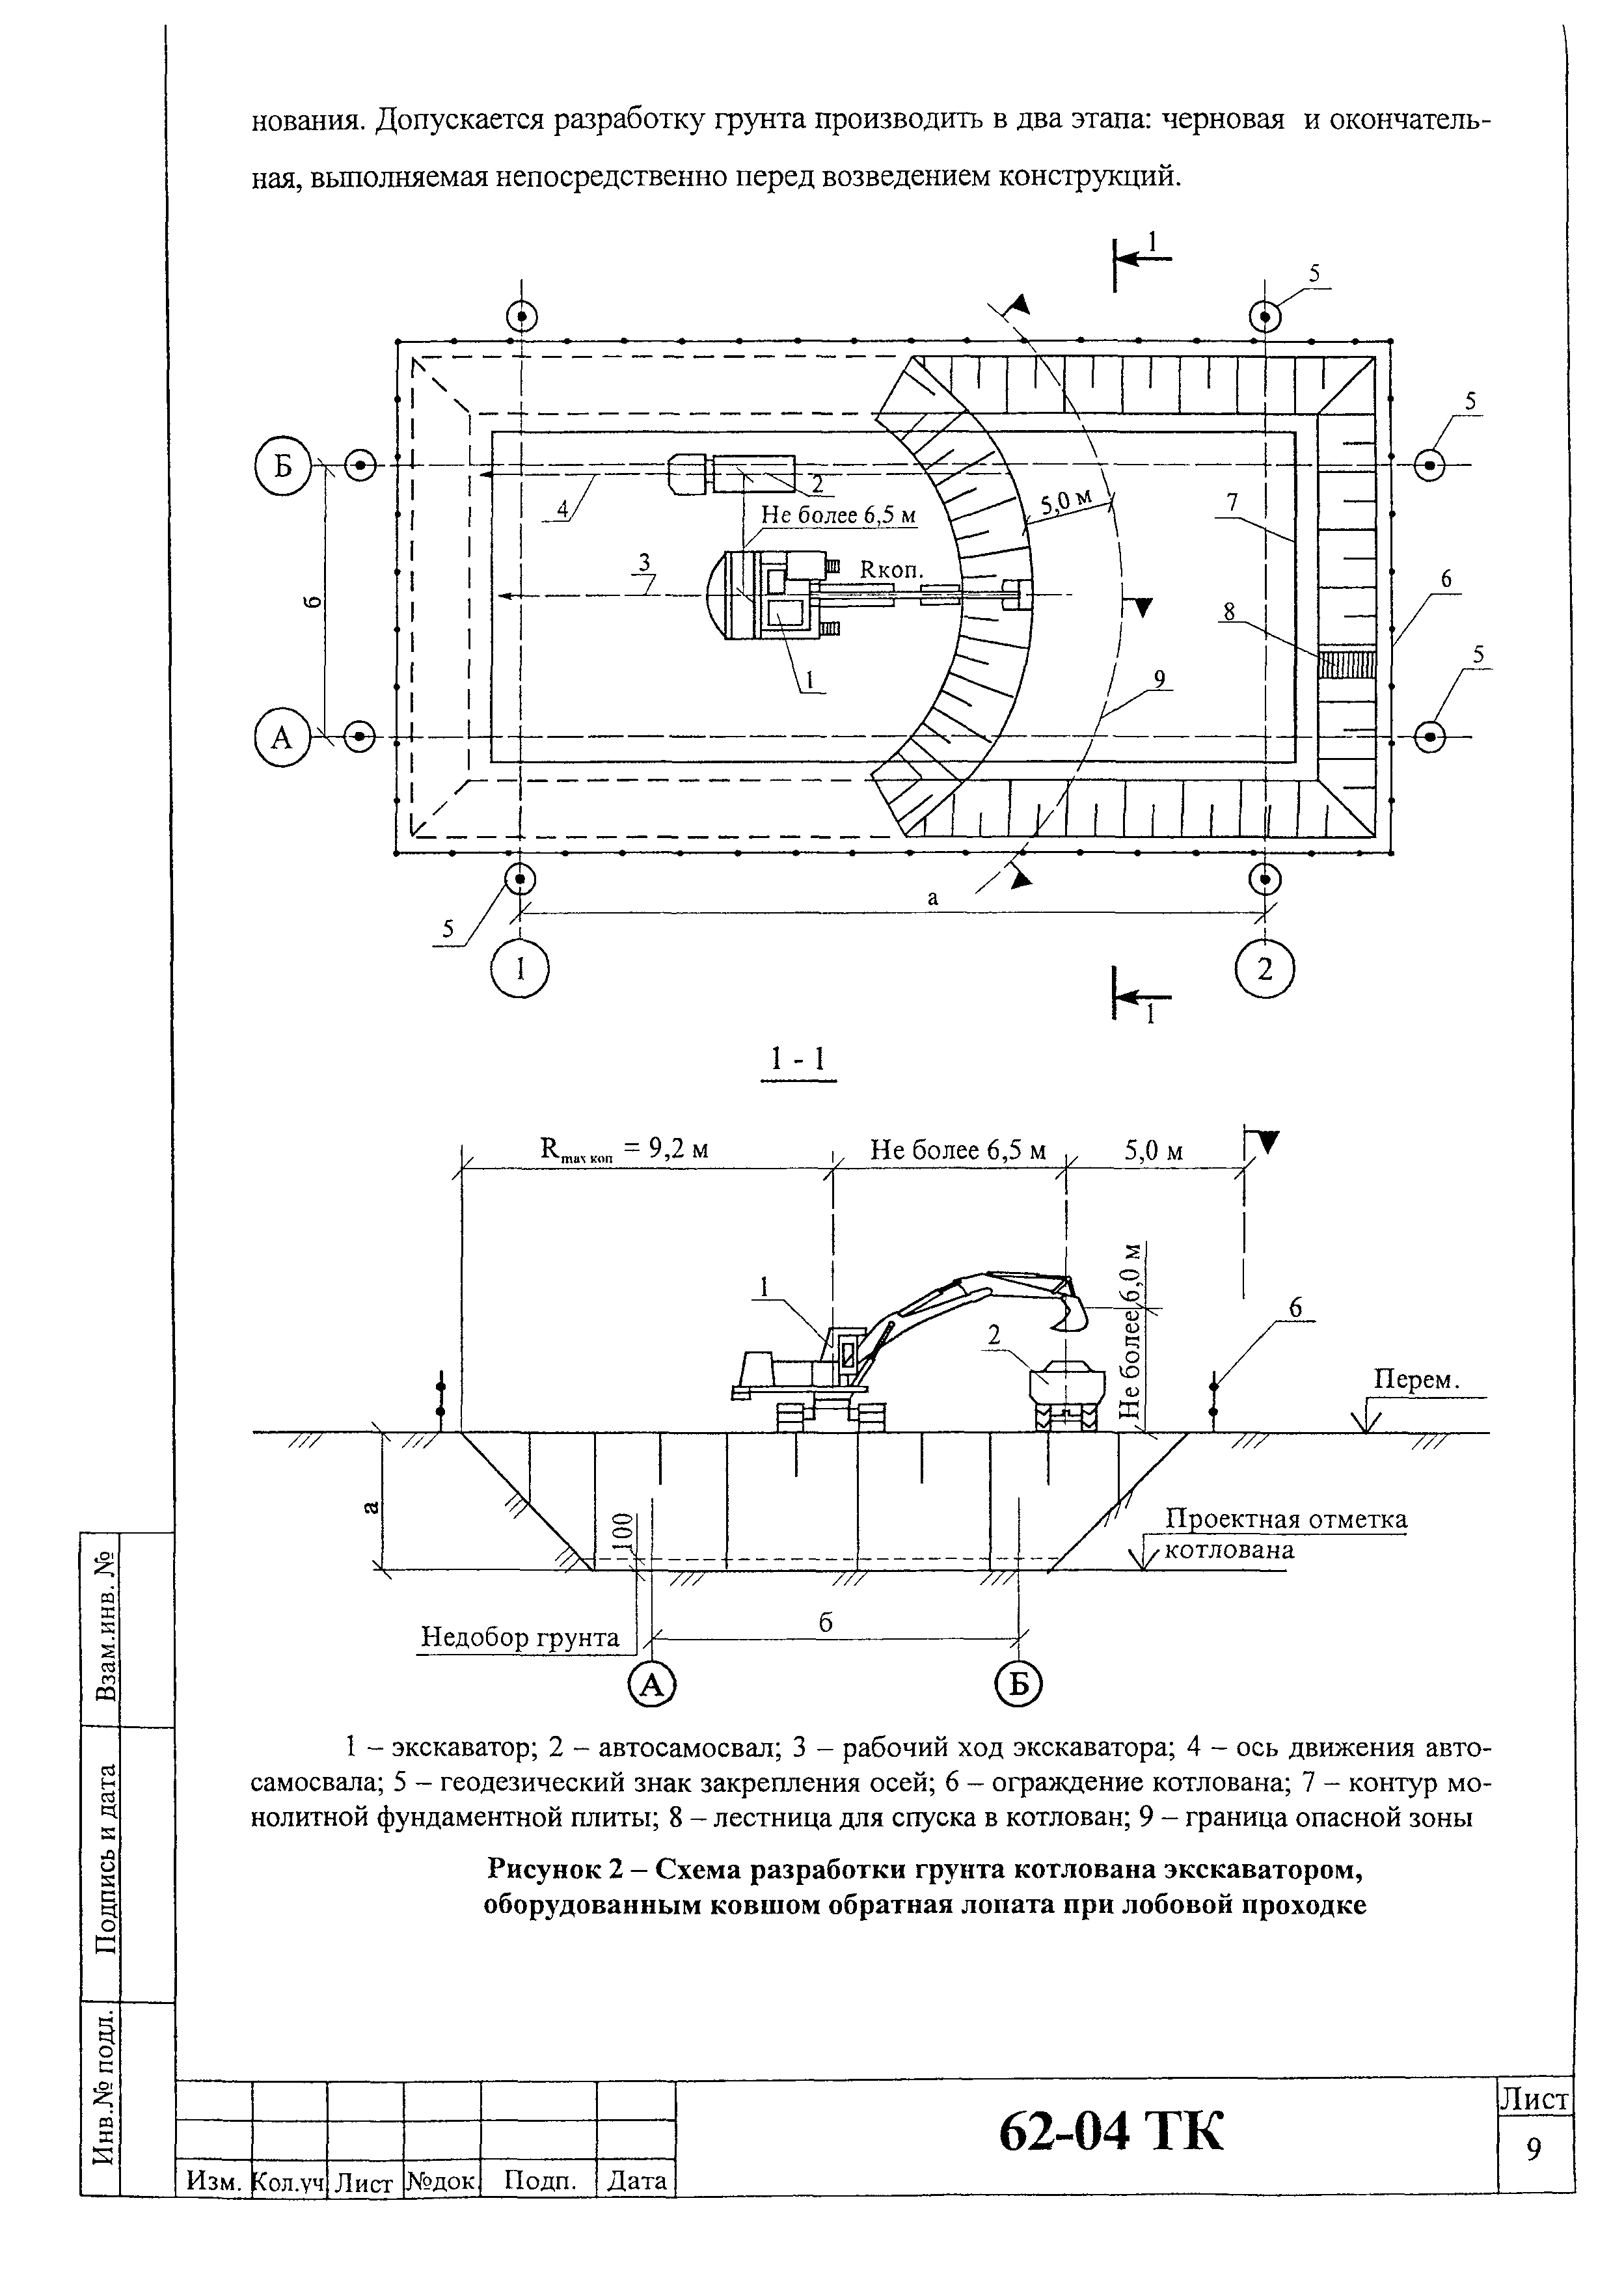 Технологическая схема разработки котлована экскаватором